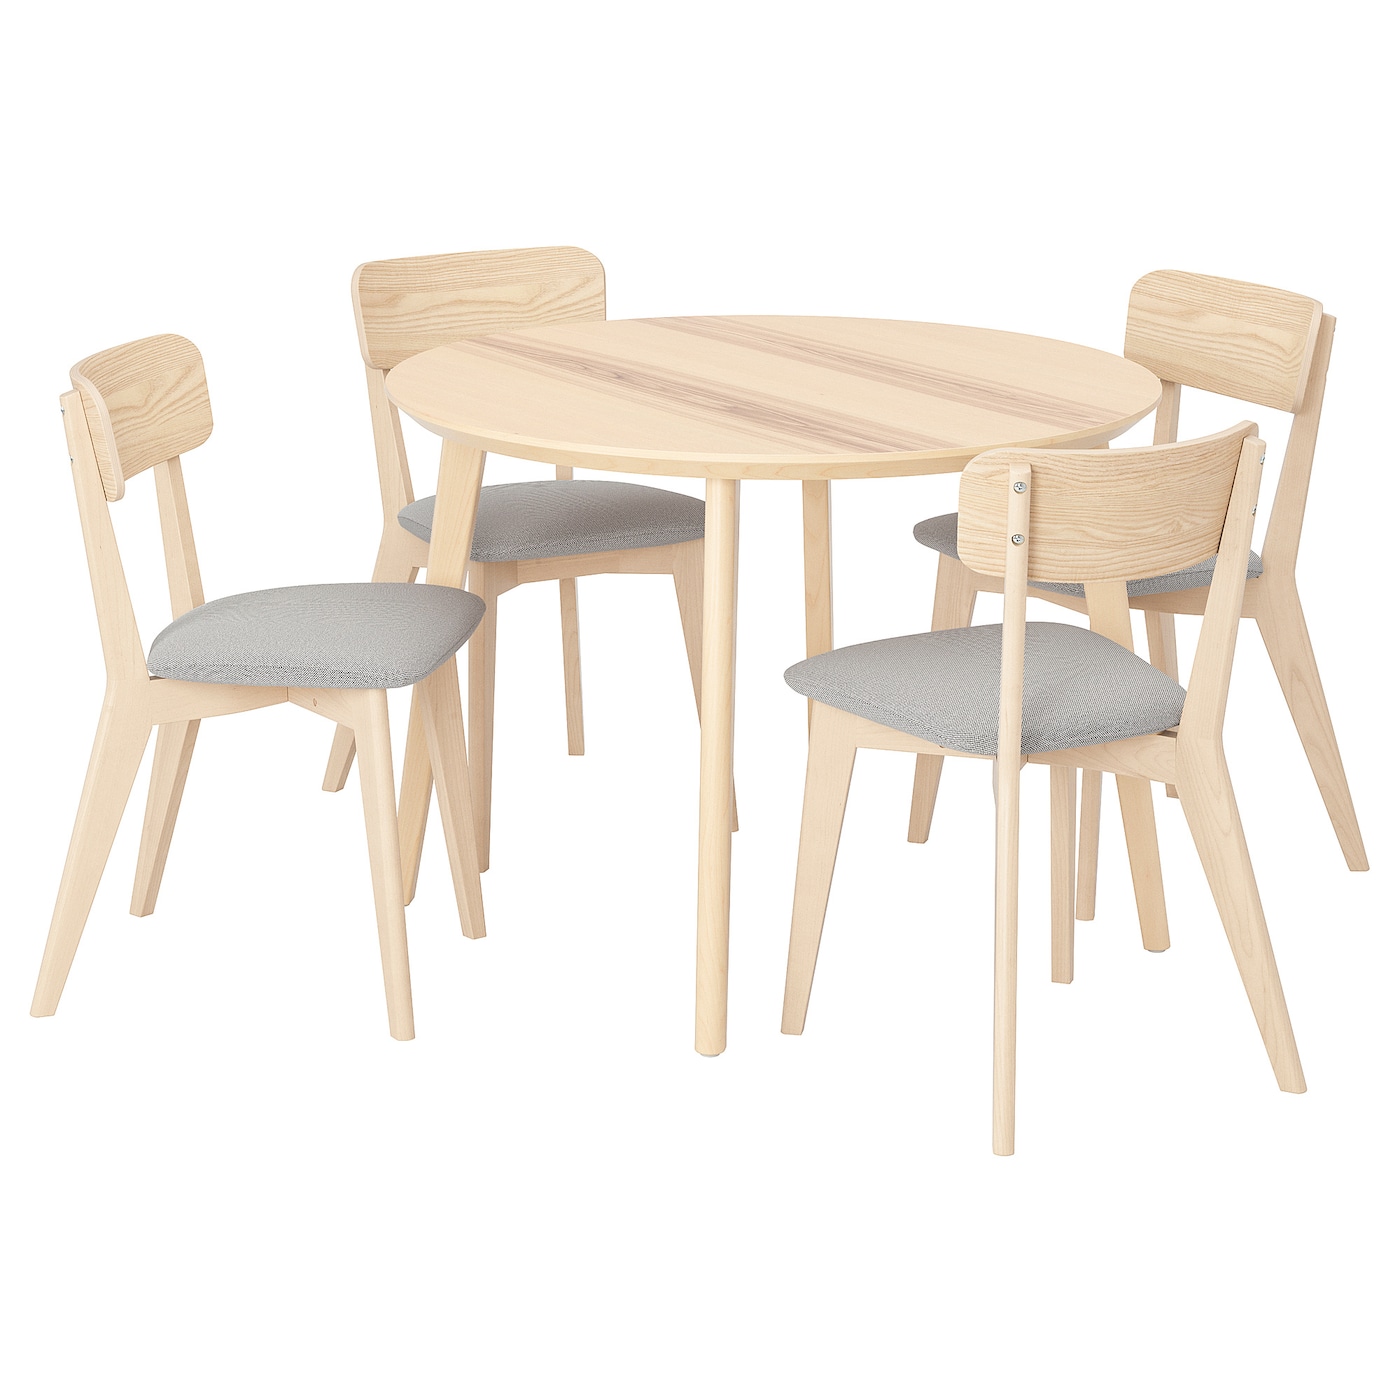 Стол и 4 стула - LISABO IKEA/ ЛИСАБО ИКЕА,  105х74 см, под беленый дуб